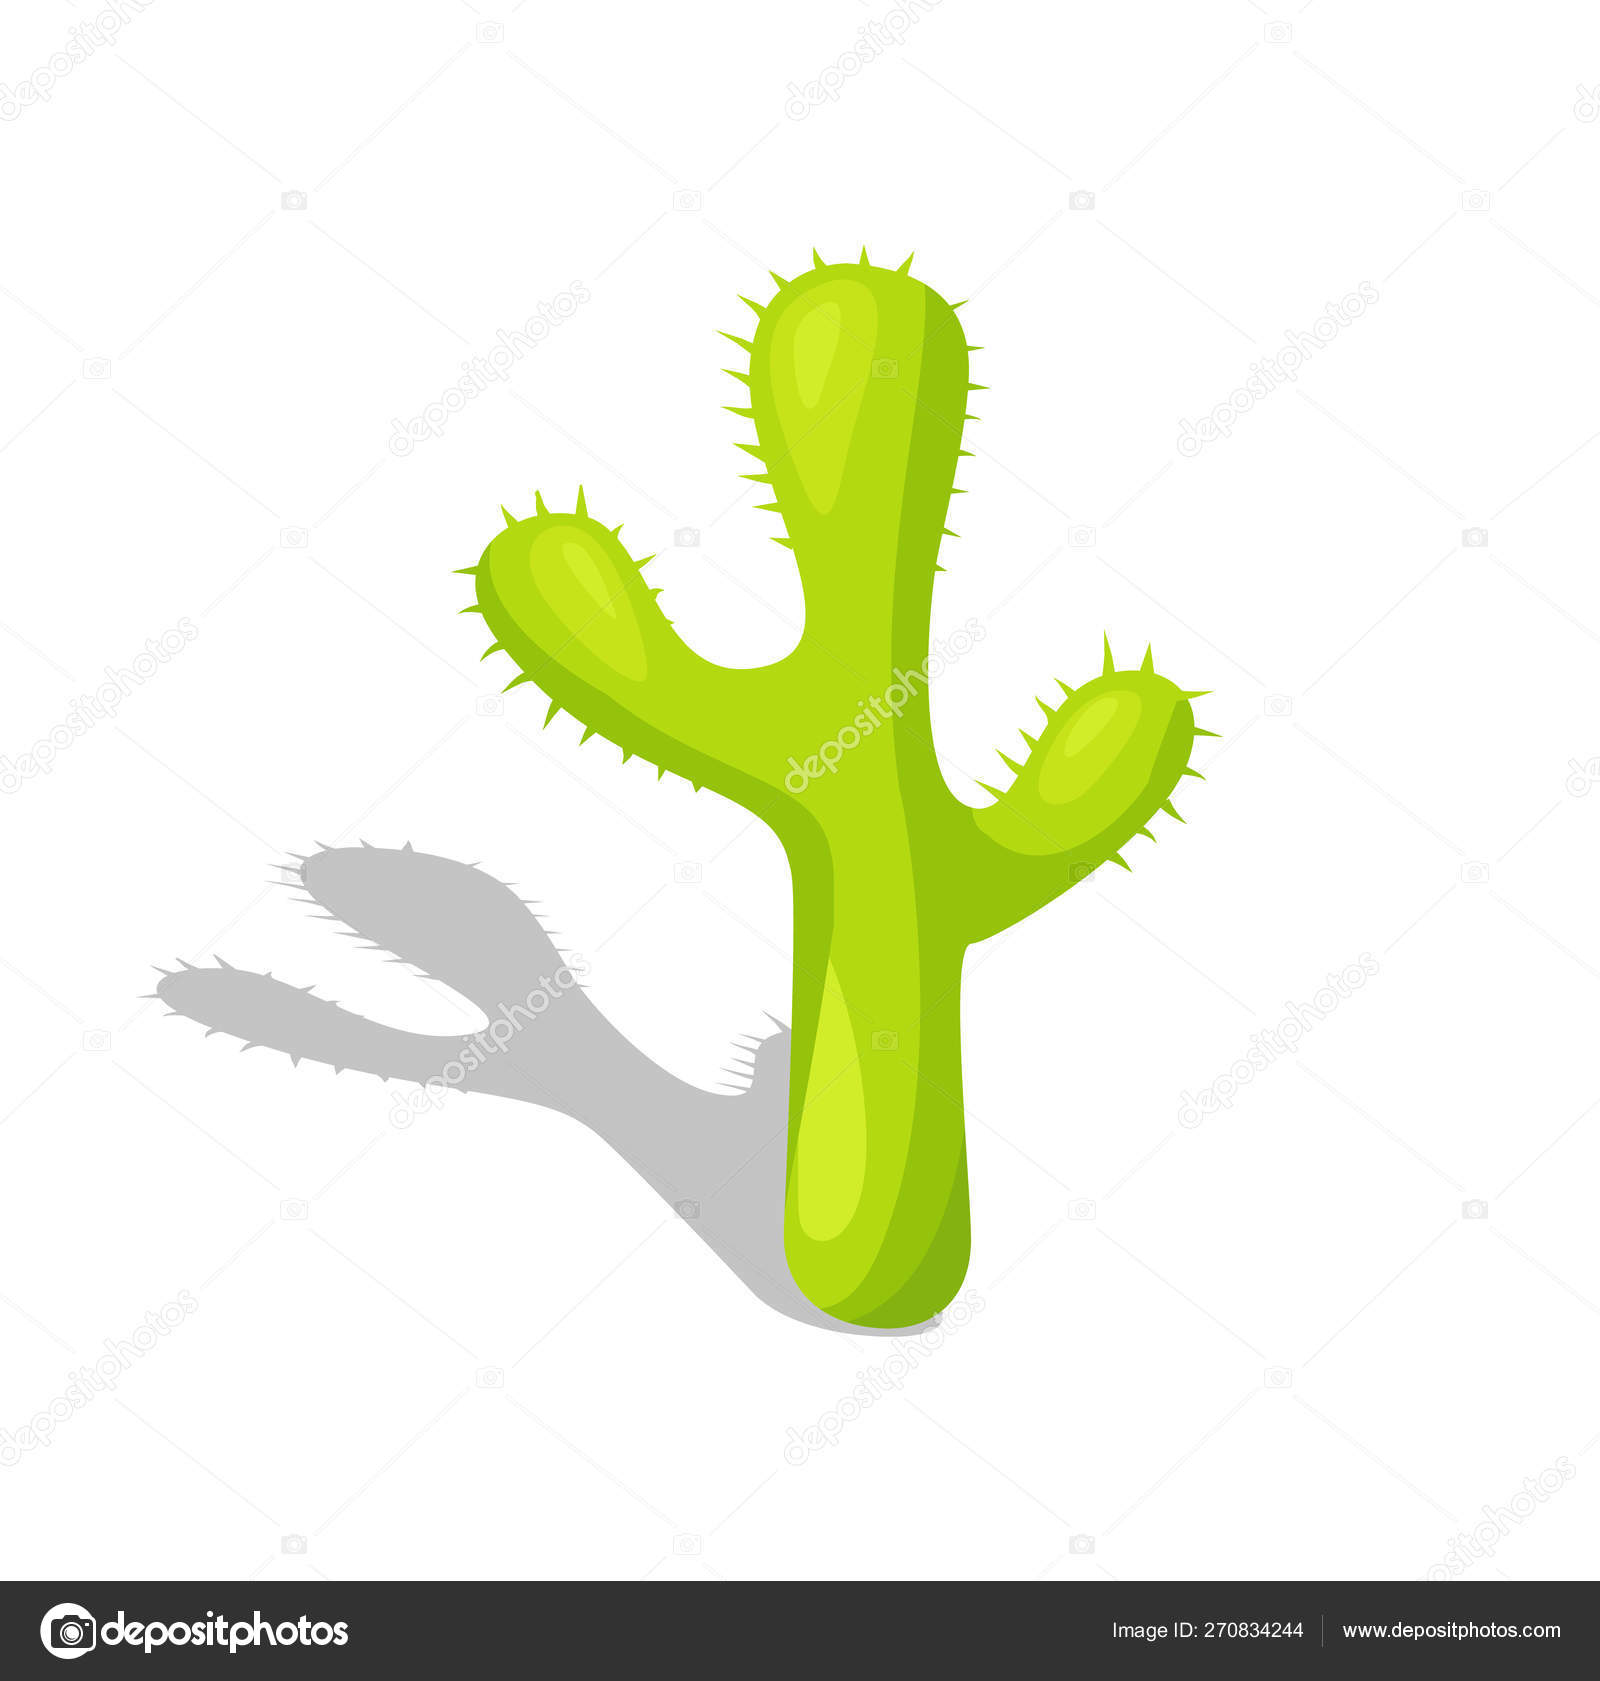 Conjunto de cactos com espinhos e flores cacto de planta verde mexicana com  espinhos elemento do deserto e paisagem do sul ilustração em vetor plana  dos desenhos animados isolado no fundo branco